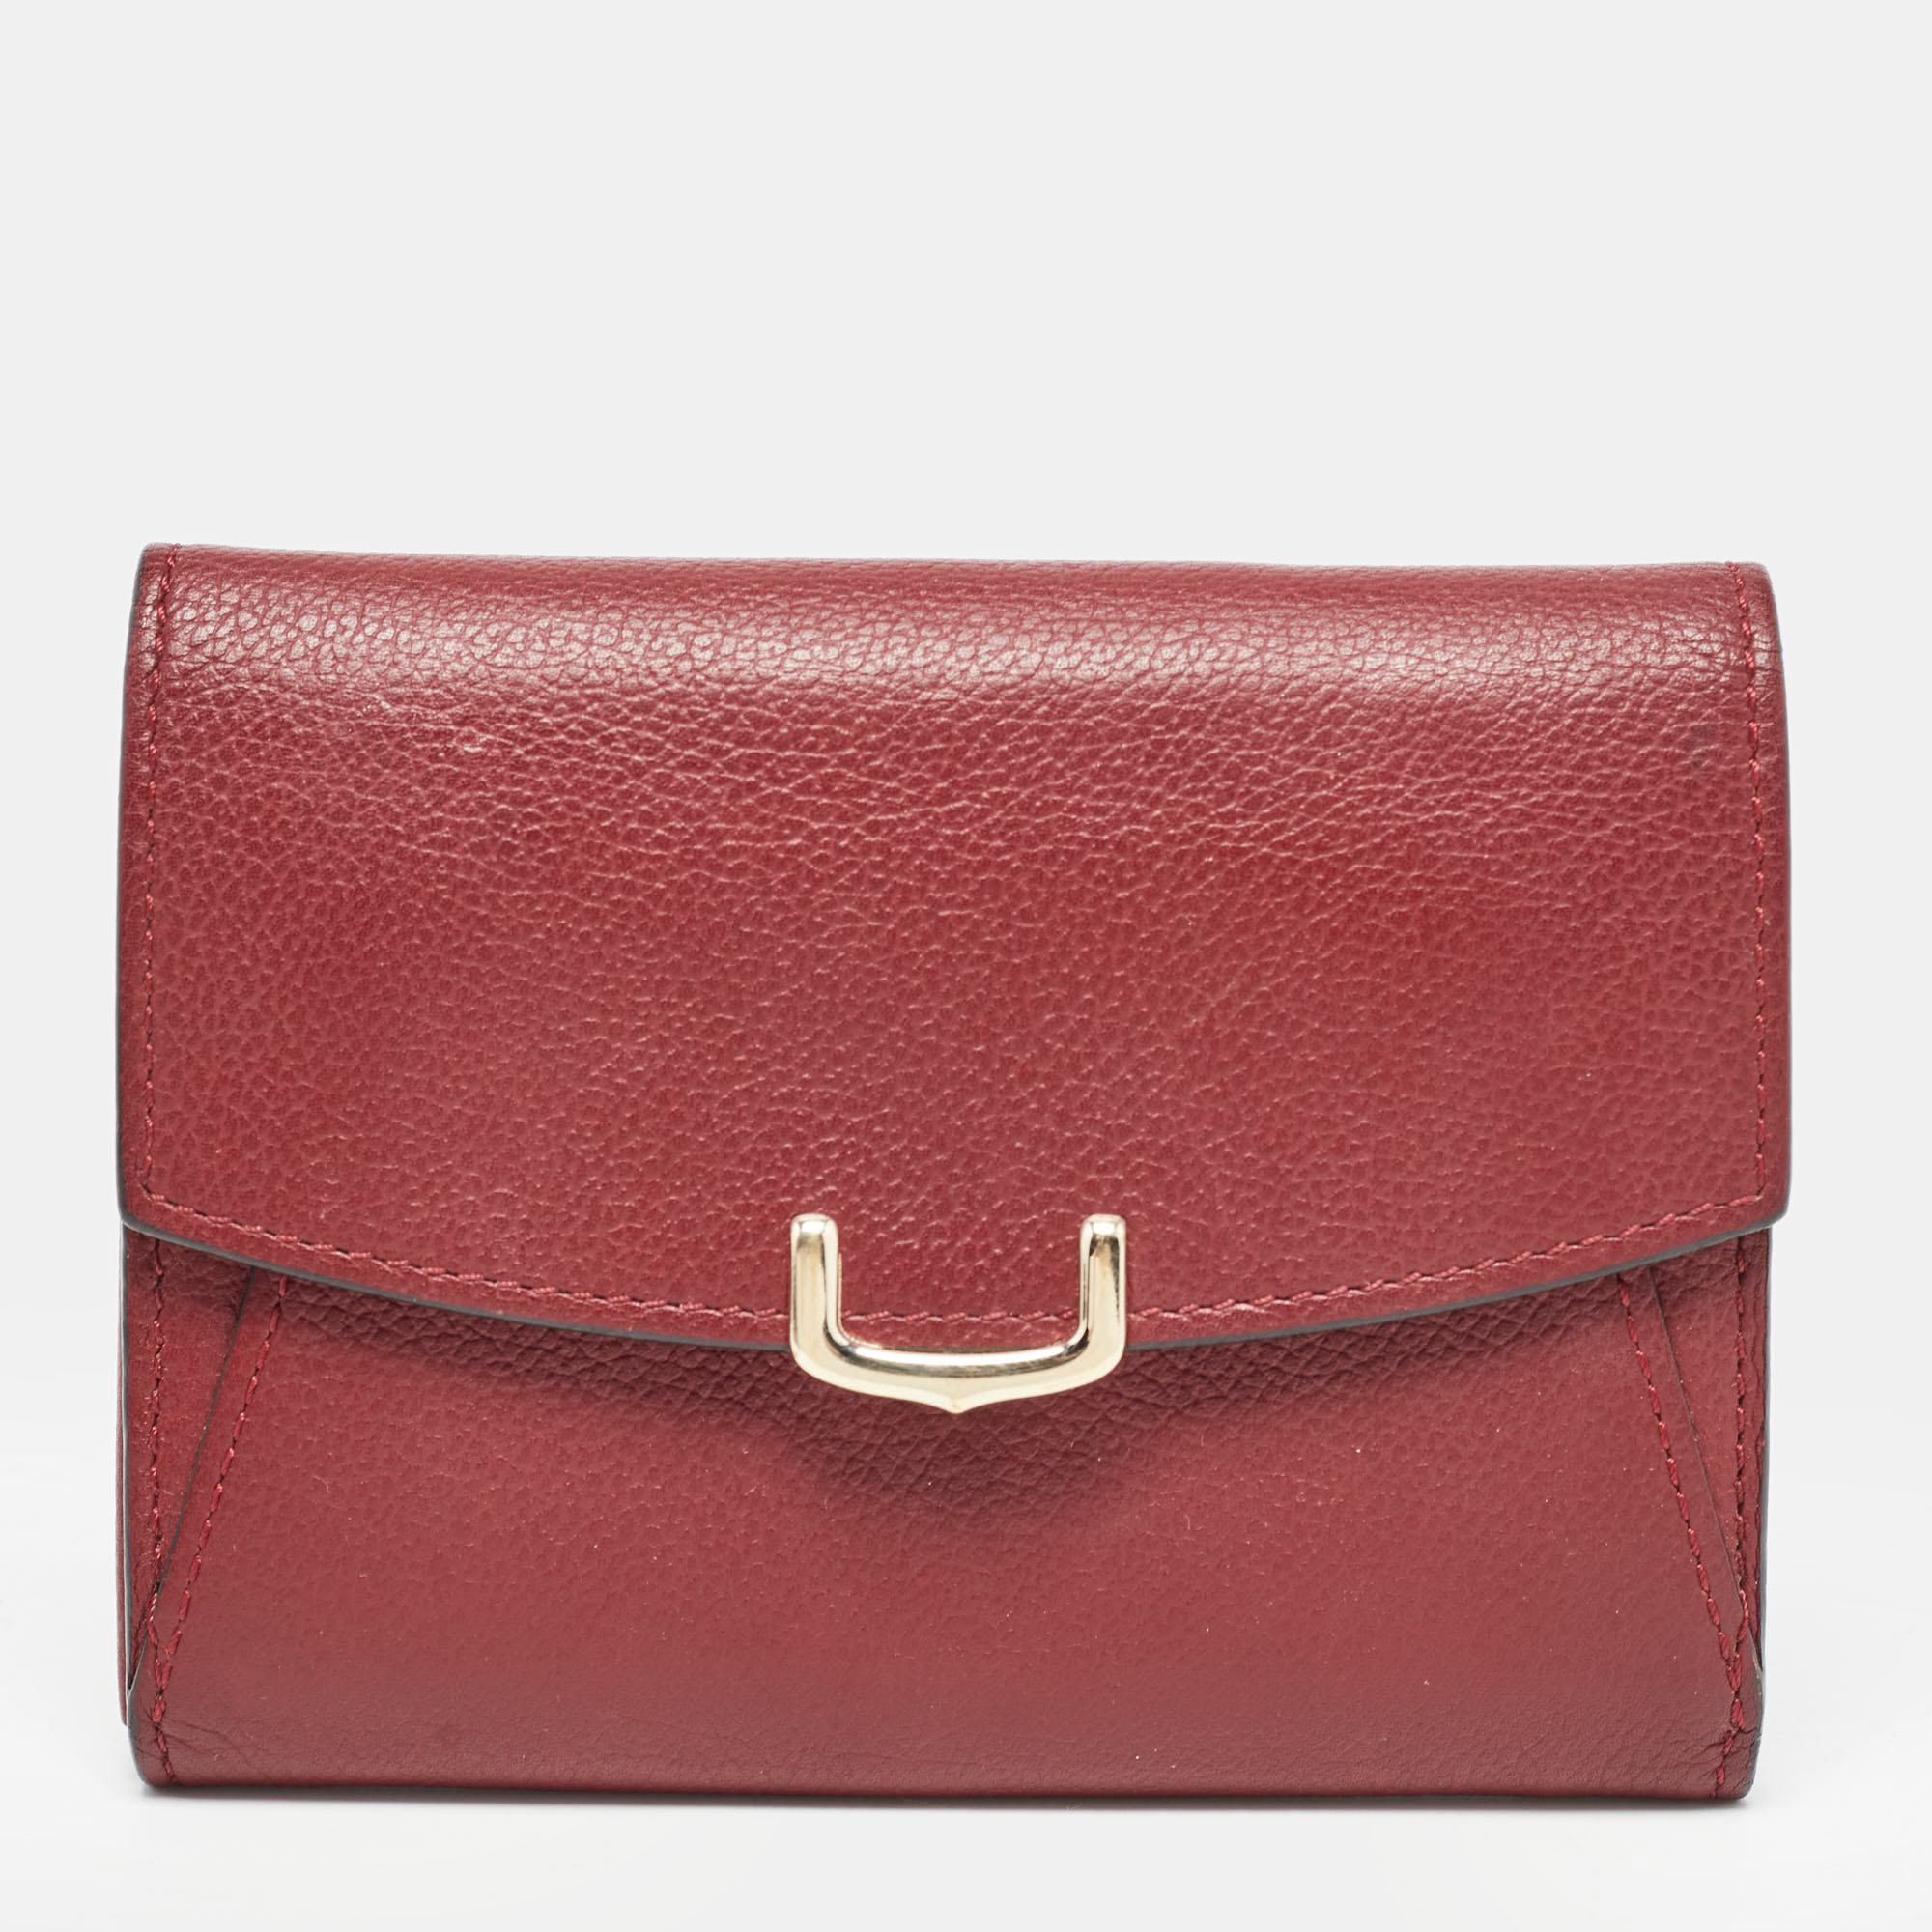 Cartier dark red leather c de cartier wallet